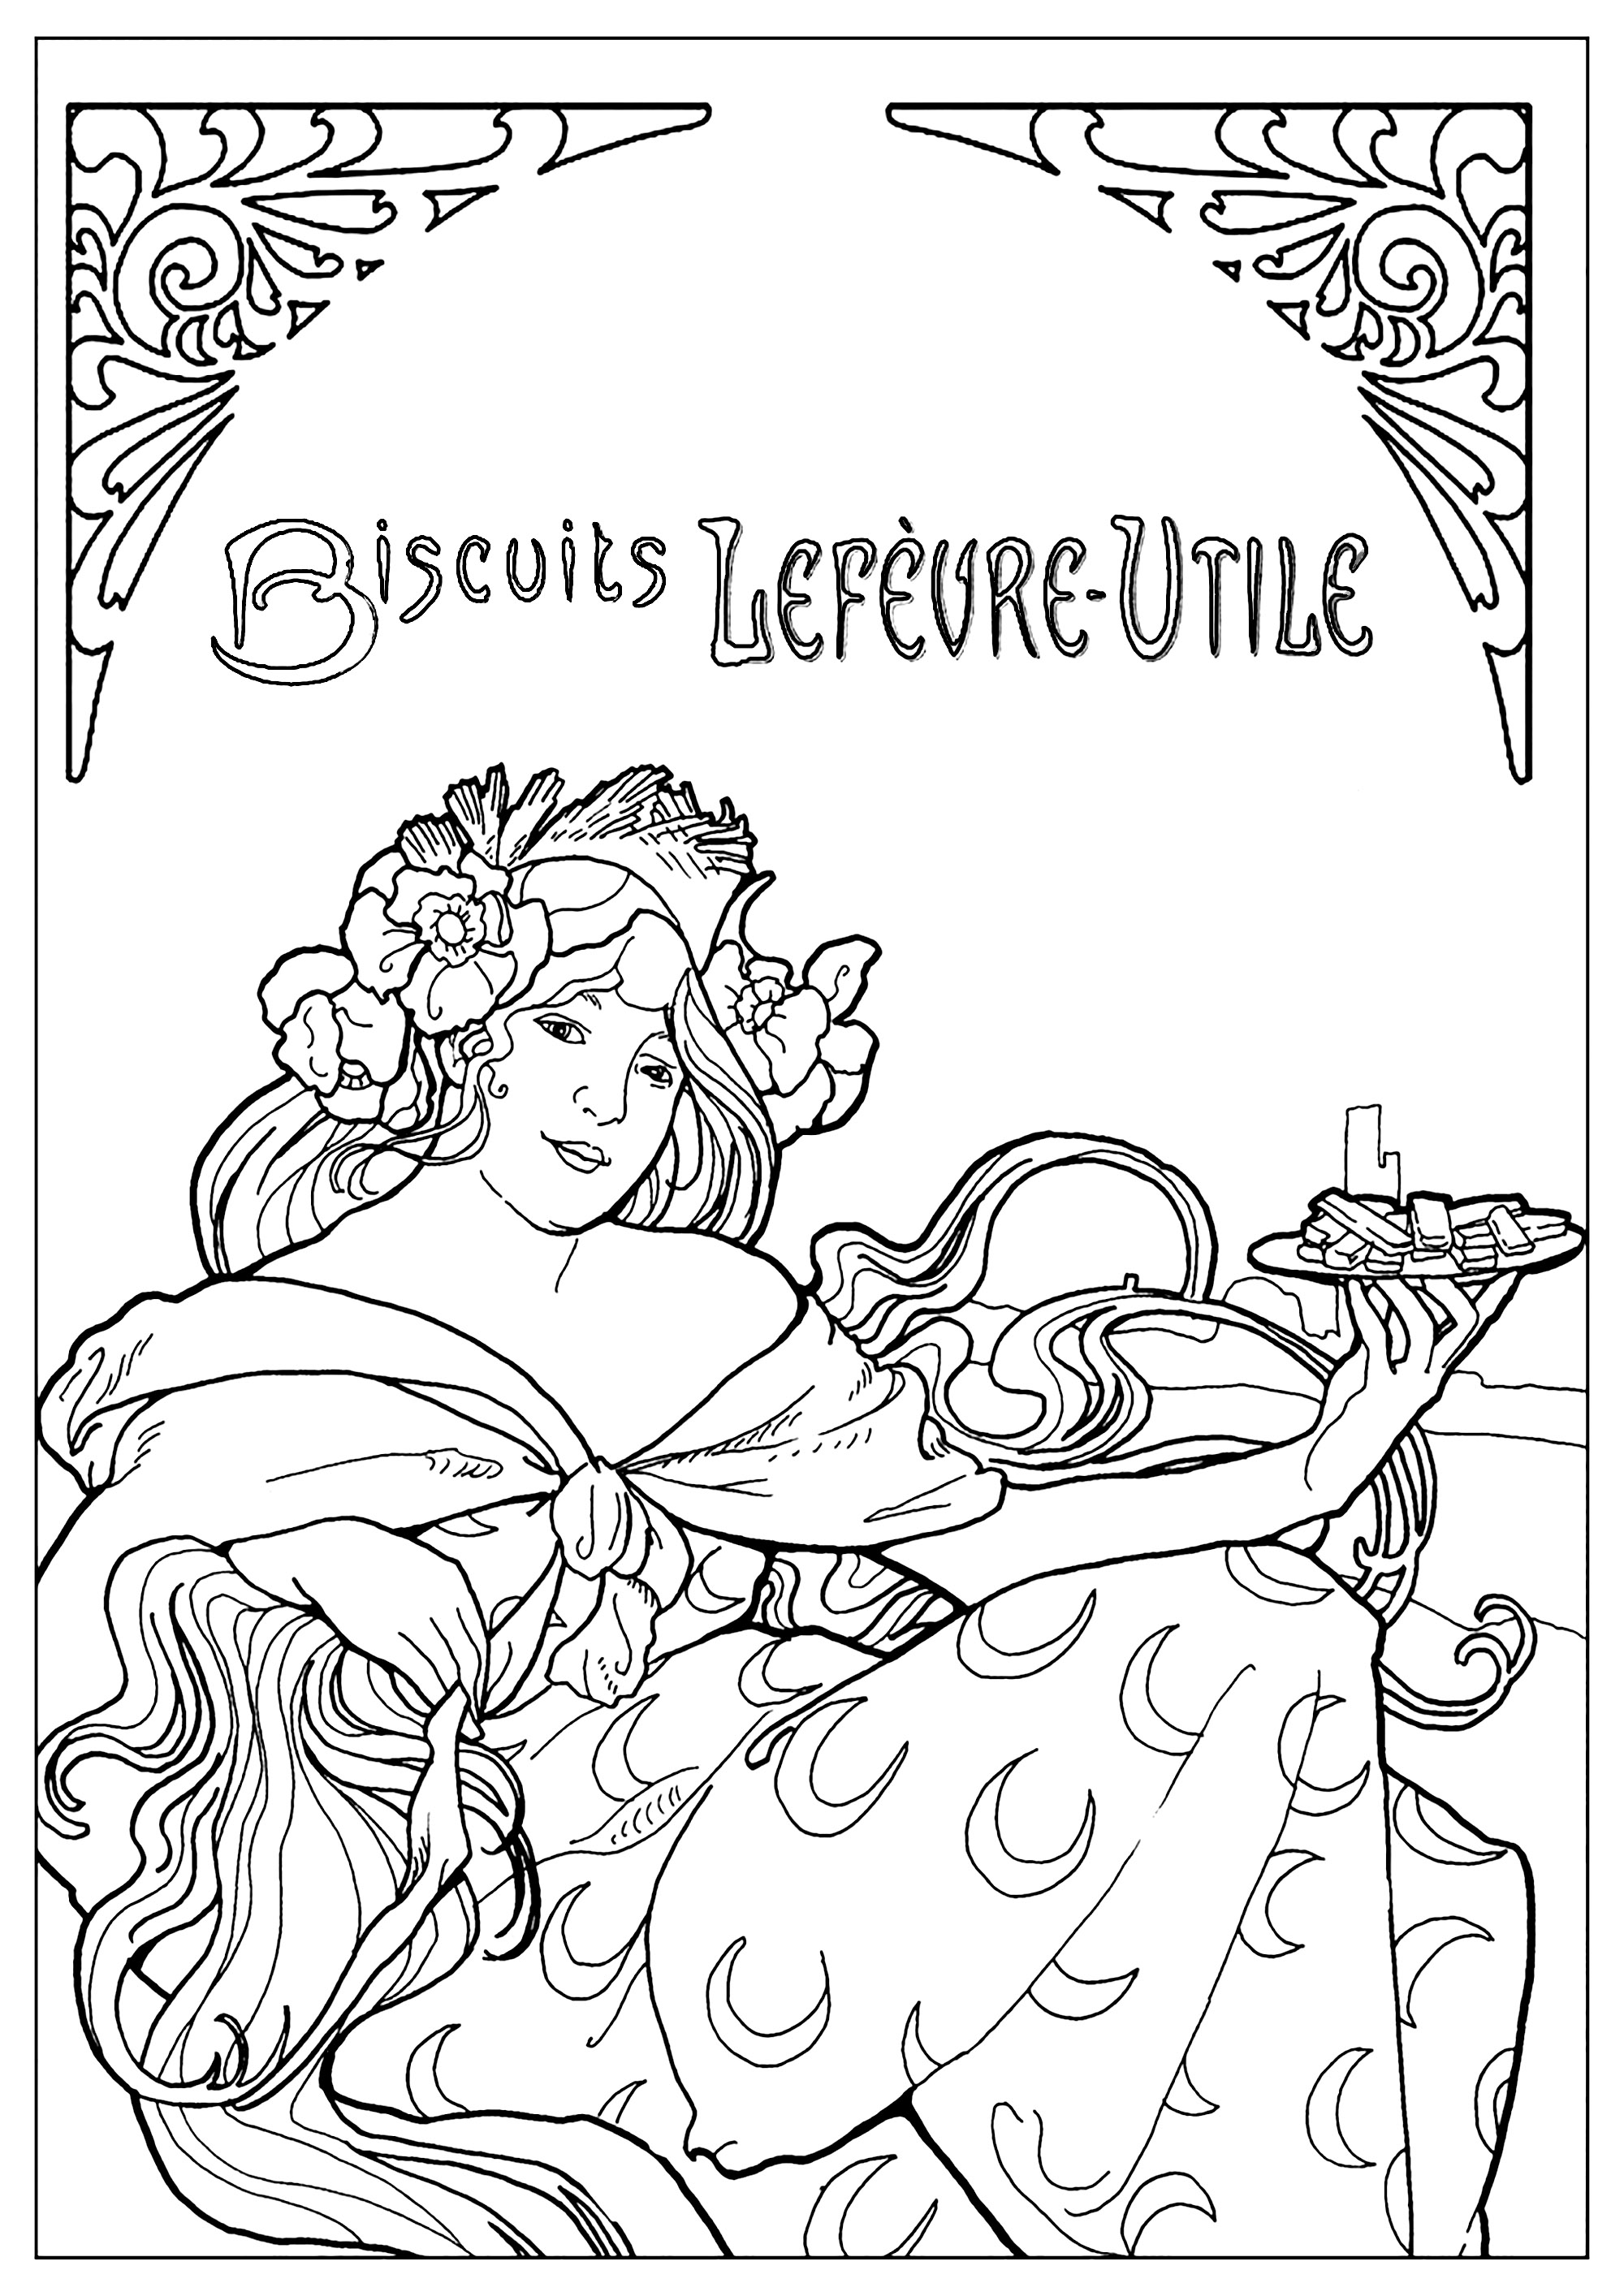 Ausmalblatt nach einem französischen Werbeplakat für Kekse Lefèvre-Utile (LU) von Alfons Mucha (1896). Dieses Plakat ist typisch für den Jugendstil. Ein Originalexemplar dieses Plakats ist im Carnavalet-Museum (Pariser Geschichtsmuseum, in Paris) zu sehen.